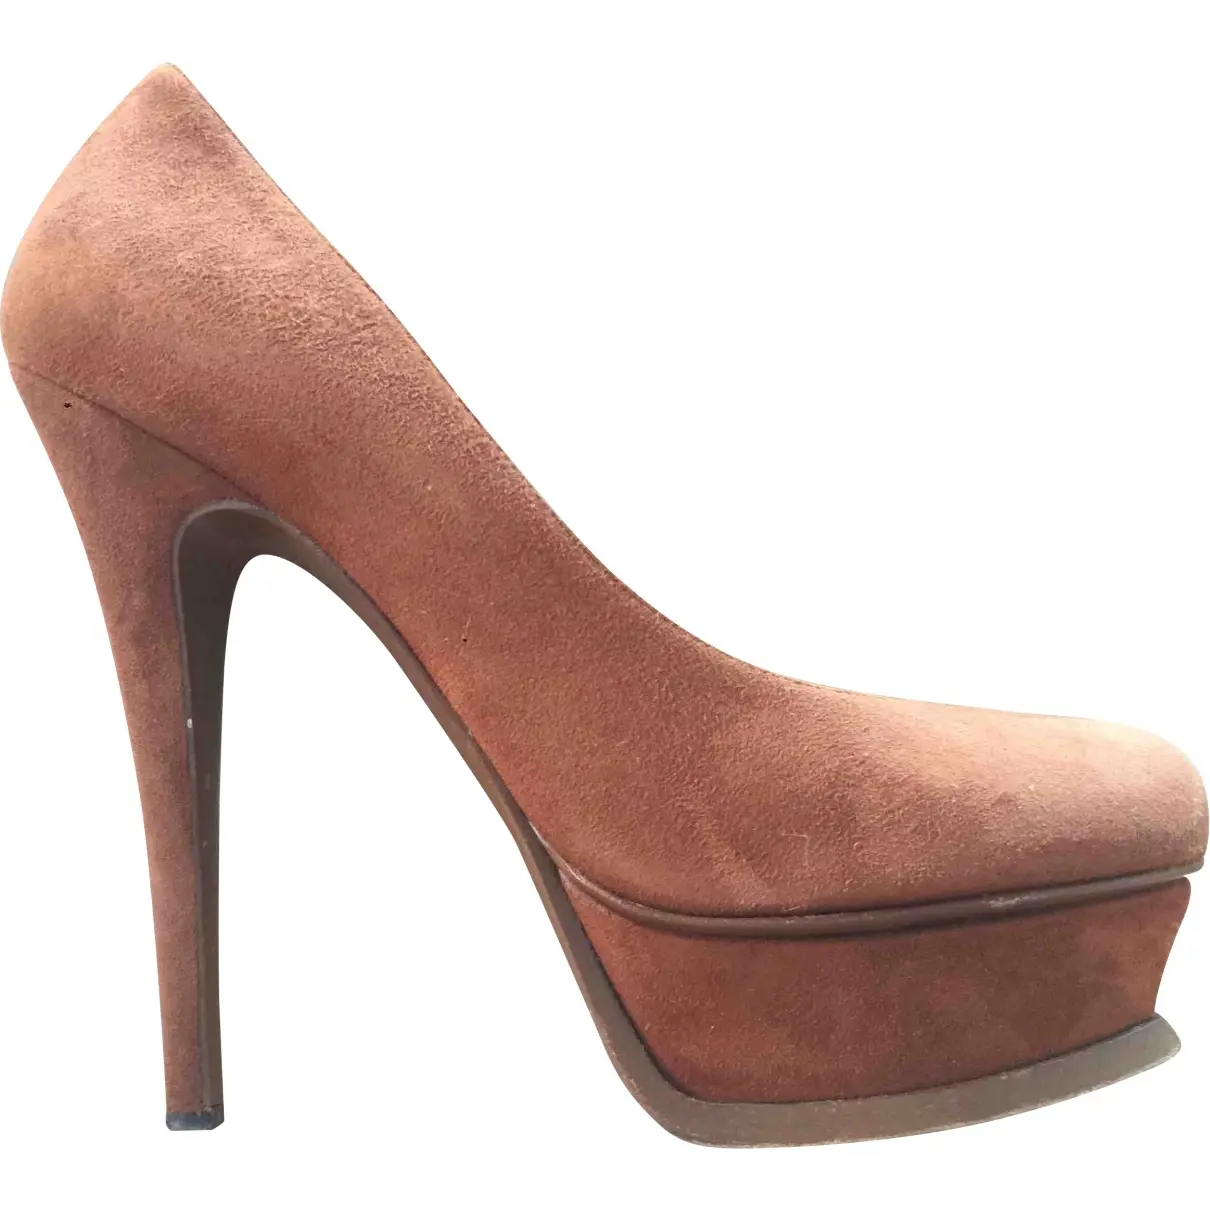 Trib Too heels Yves Saint Laurent - Vintage